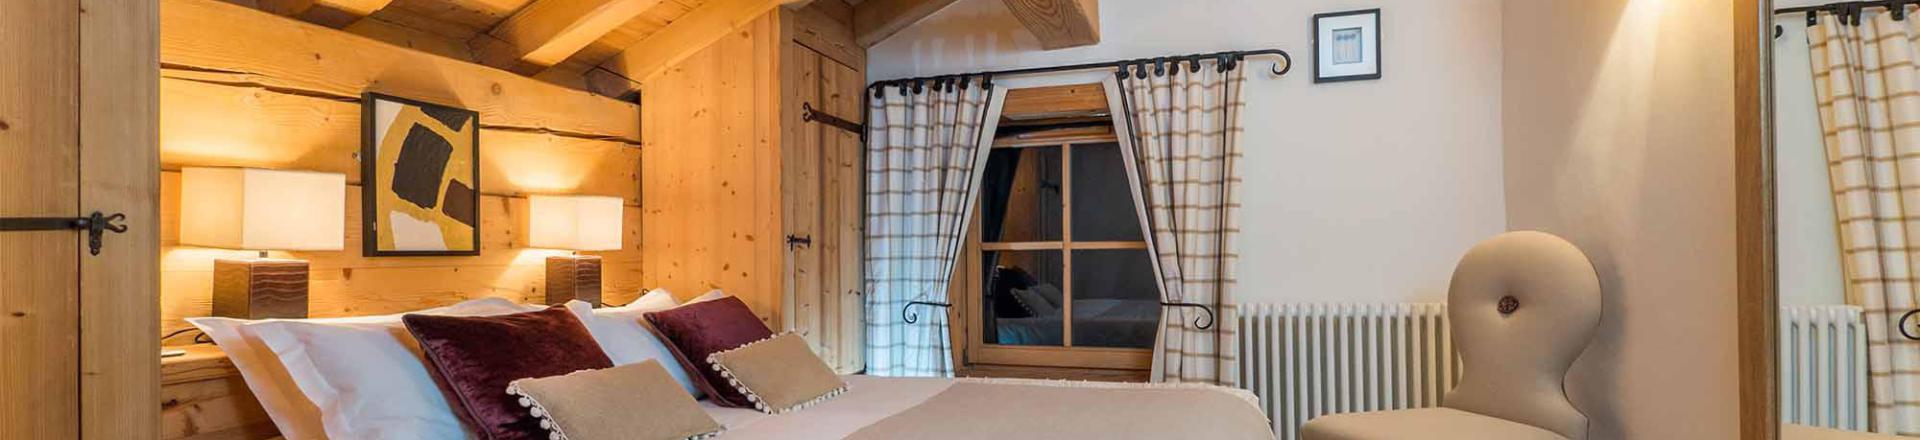 Rent in ski resort Chalet Davos - Val d'Isère - Bedroom under mansard